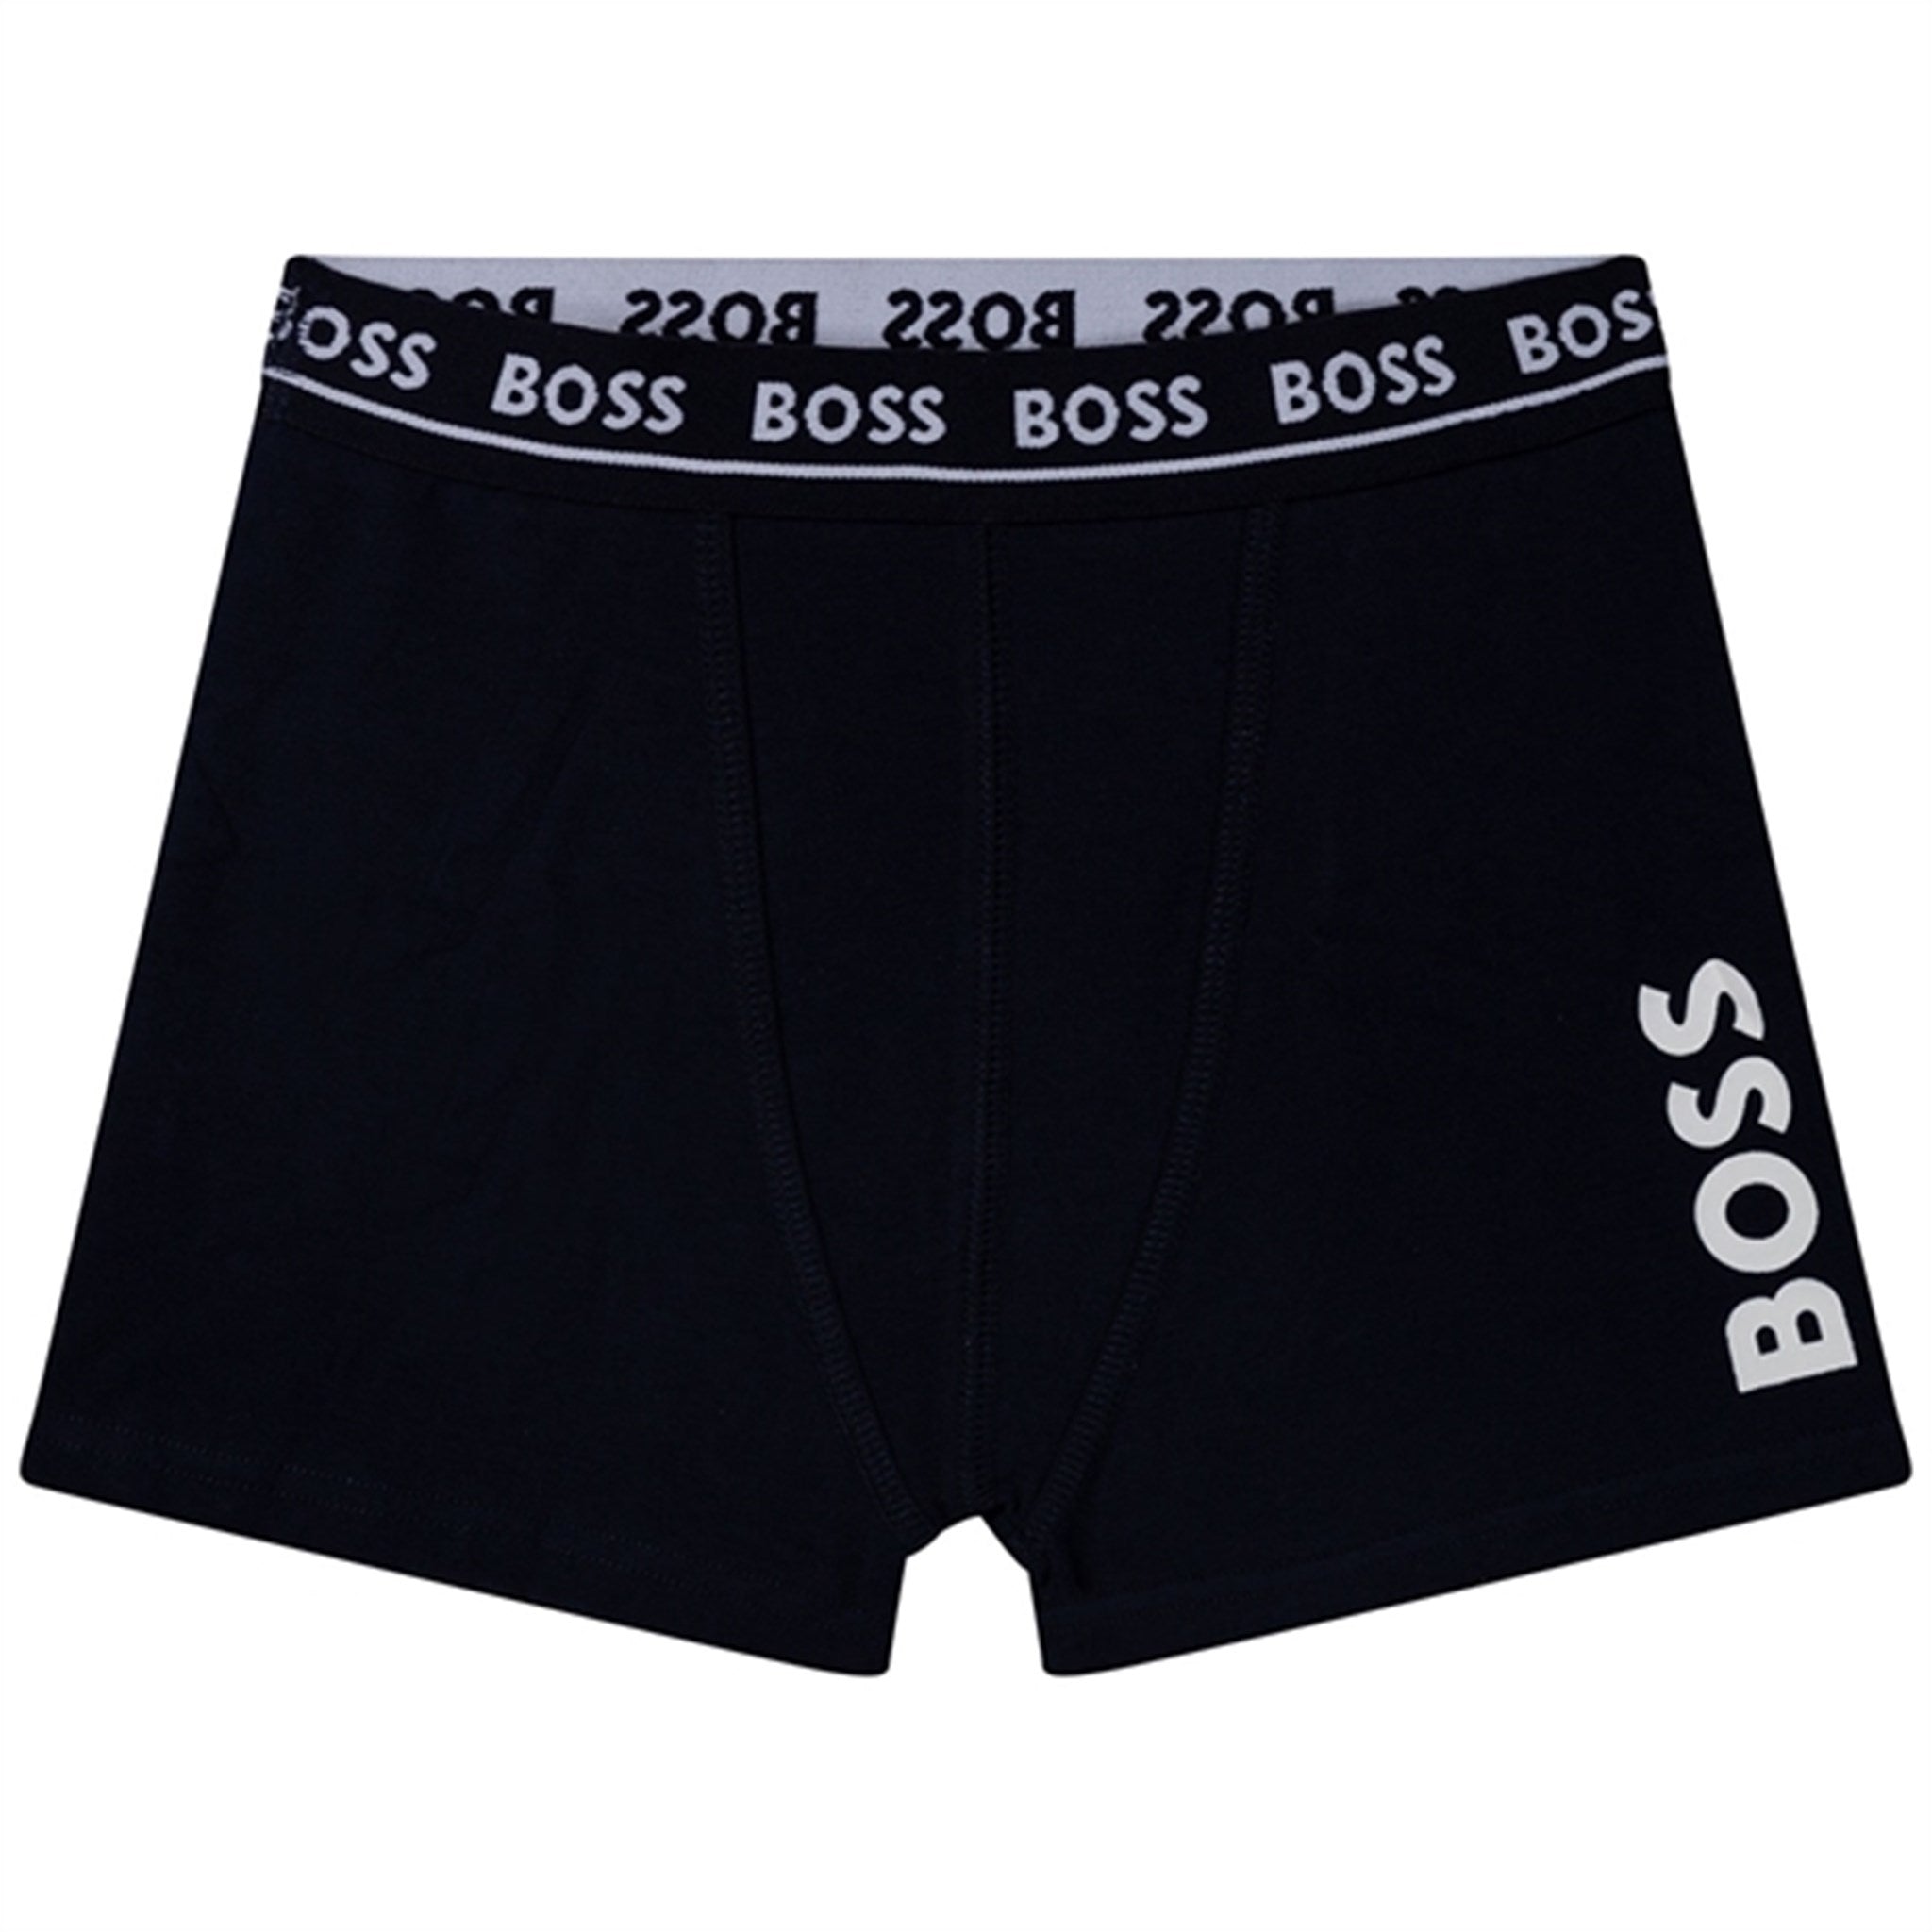 Hugo Boss Boxer Shorts 2-pack Black 2